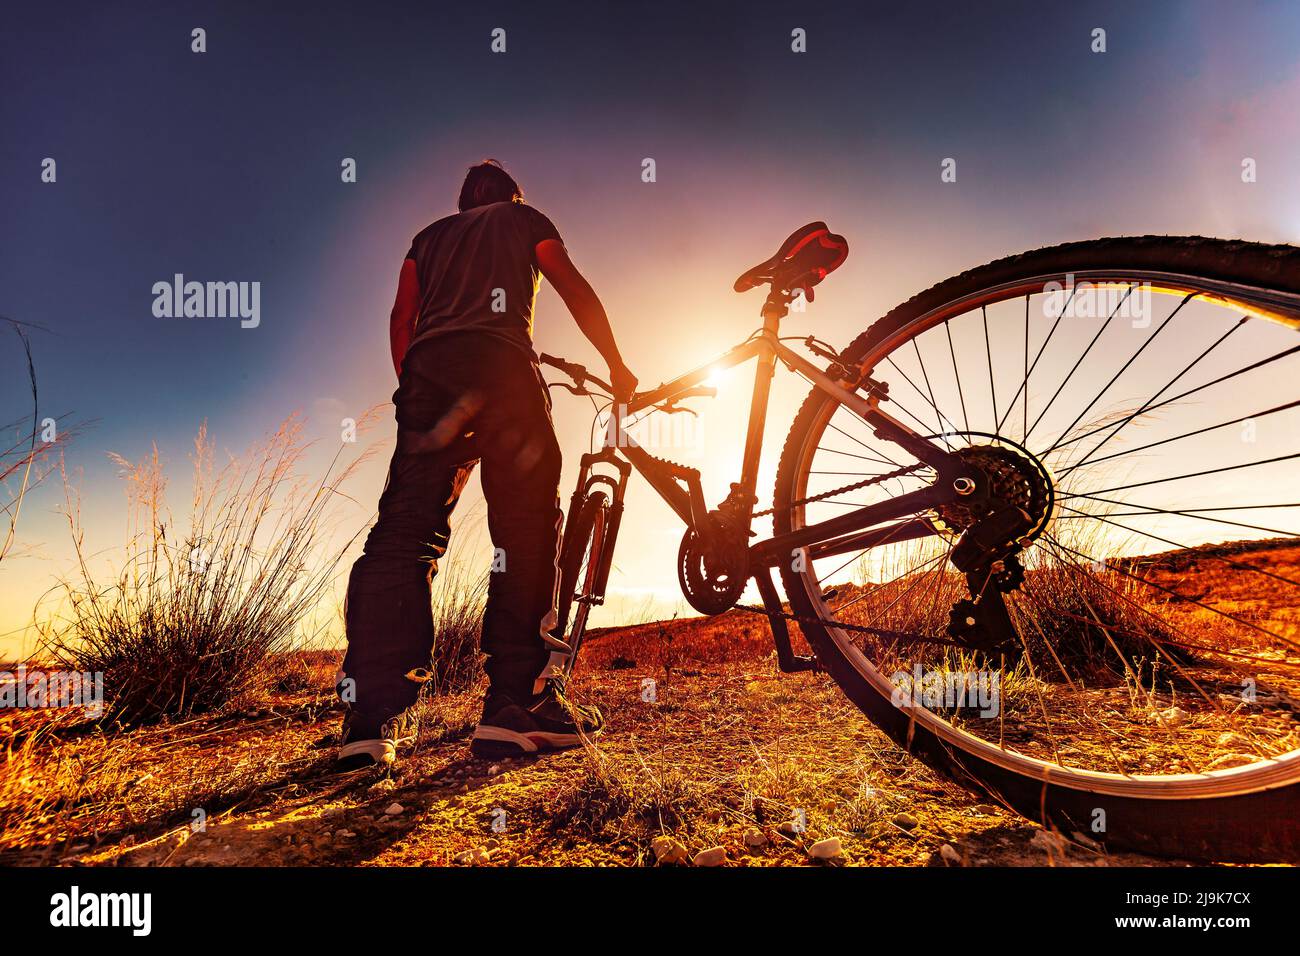 Biker- und Sonnenuntergangslandschaft.Freizeit im Freien mit dem Mountainbike. Extremsport und Erholung. Stockfoto